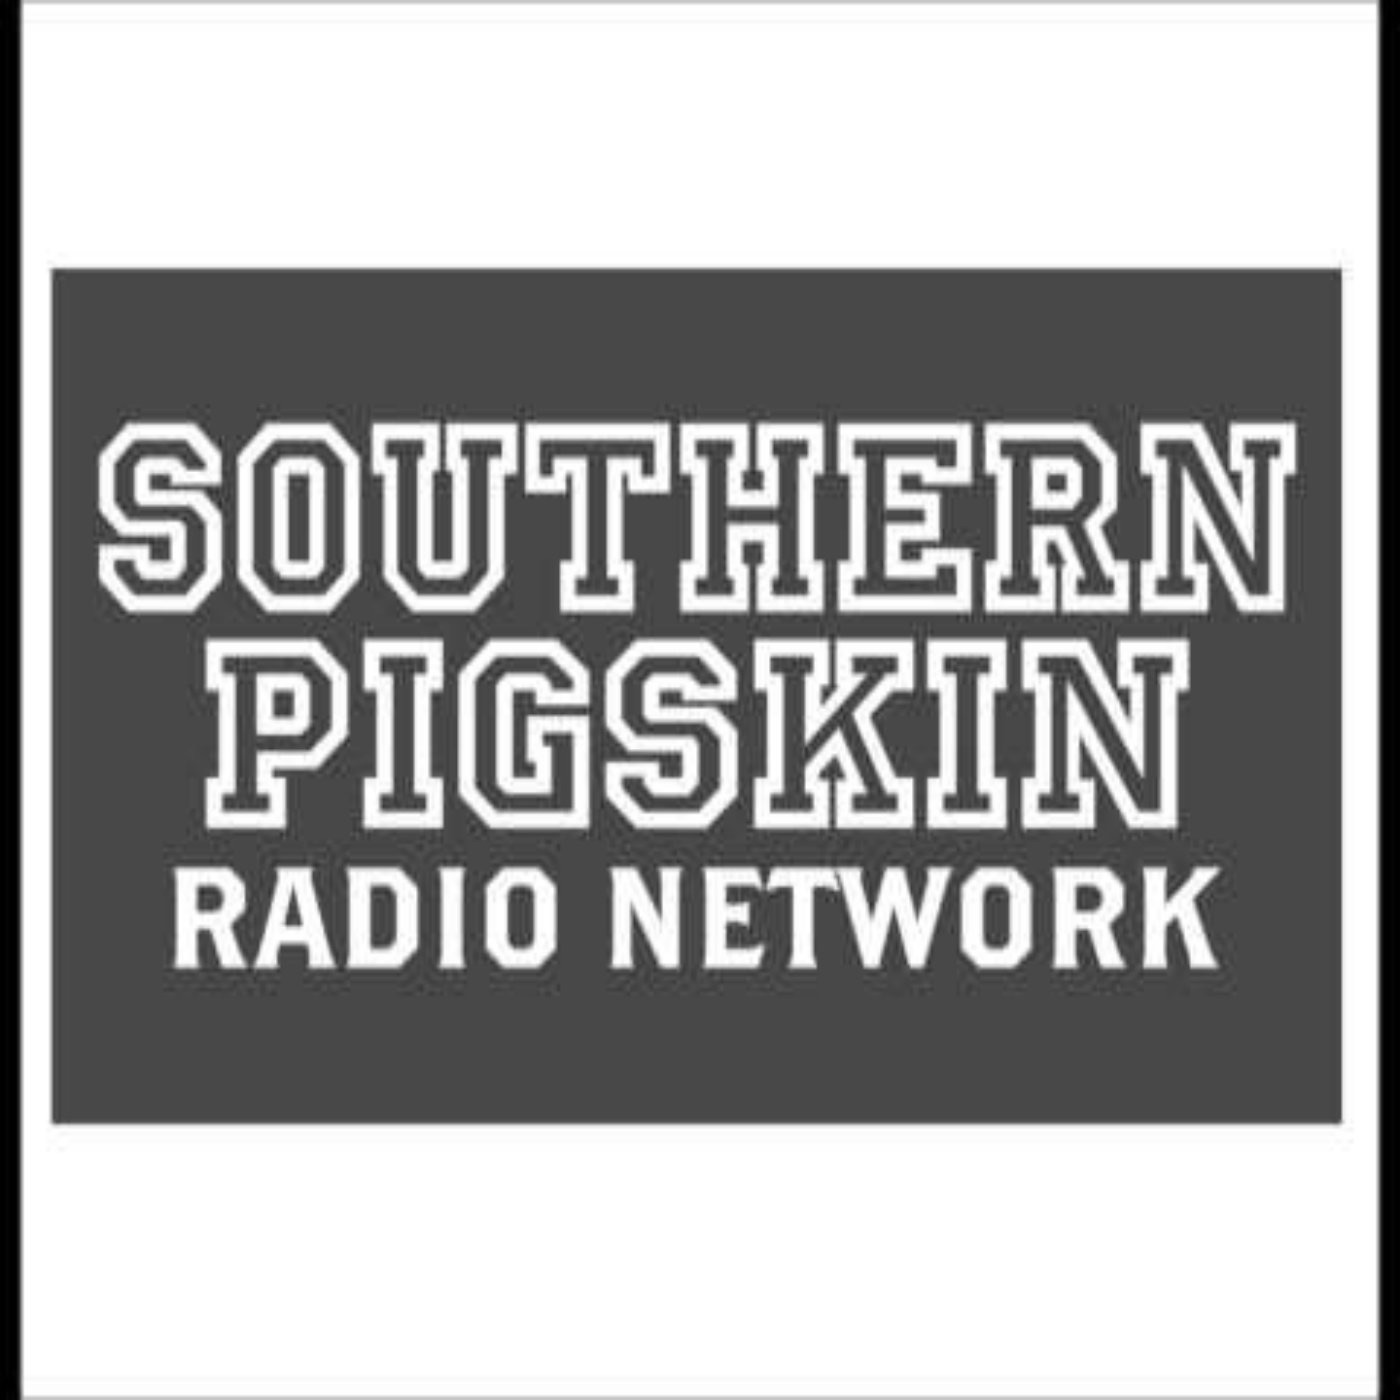 Southern Pigskin Podcast